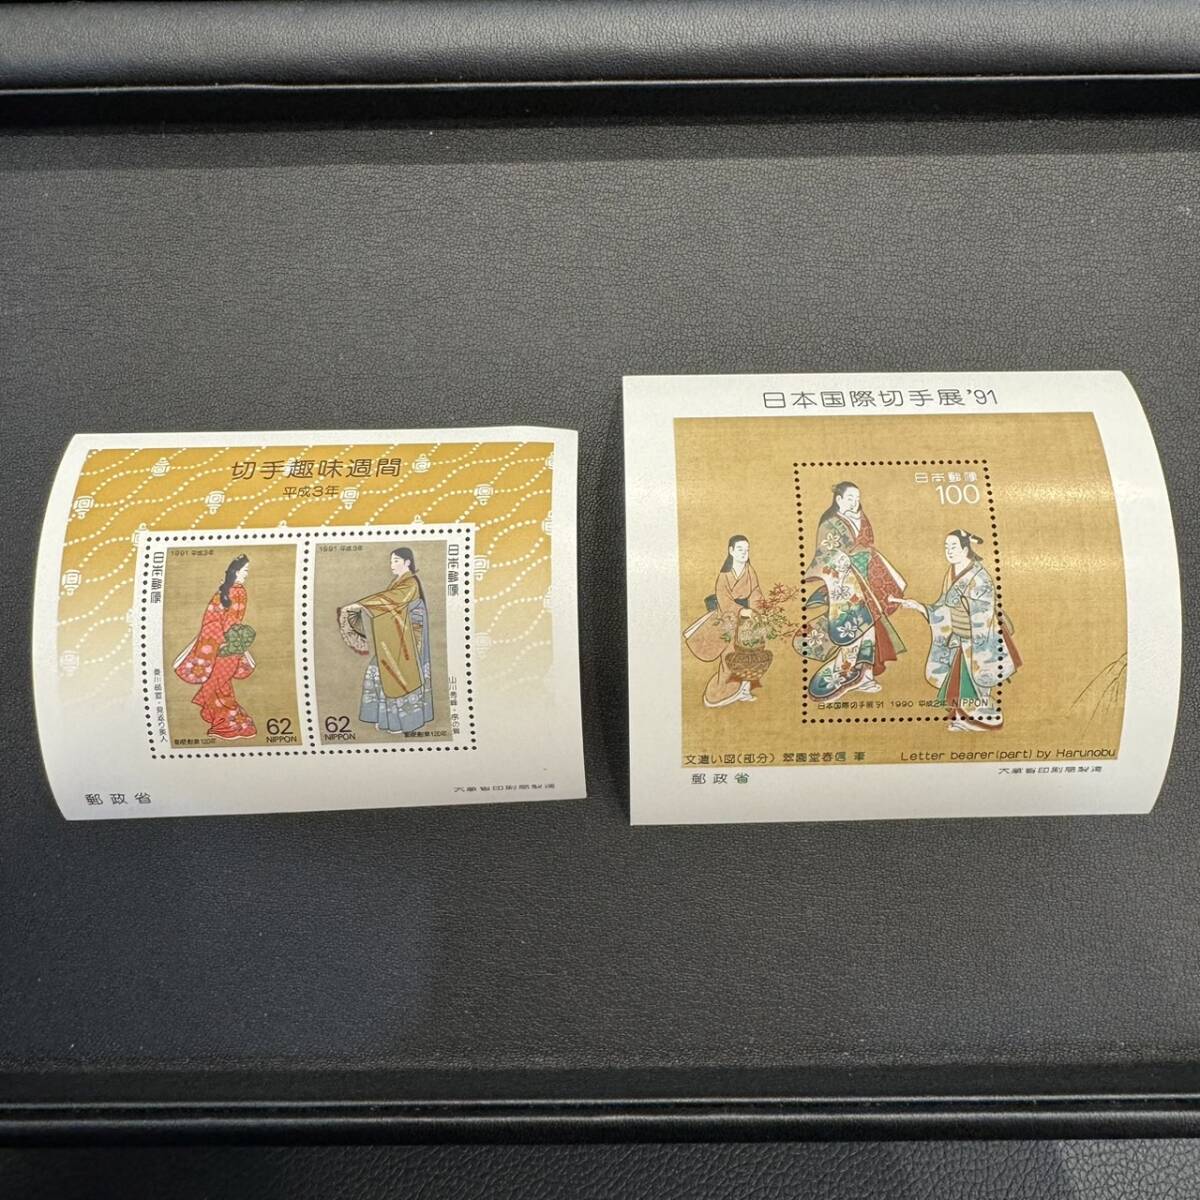 切手趣味週間 日本国際切手展 見返り美人 序の舞 翠園堂晴信画 文遣い図 切手ミニシート 額面224 コレクターの画像1